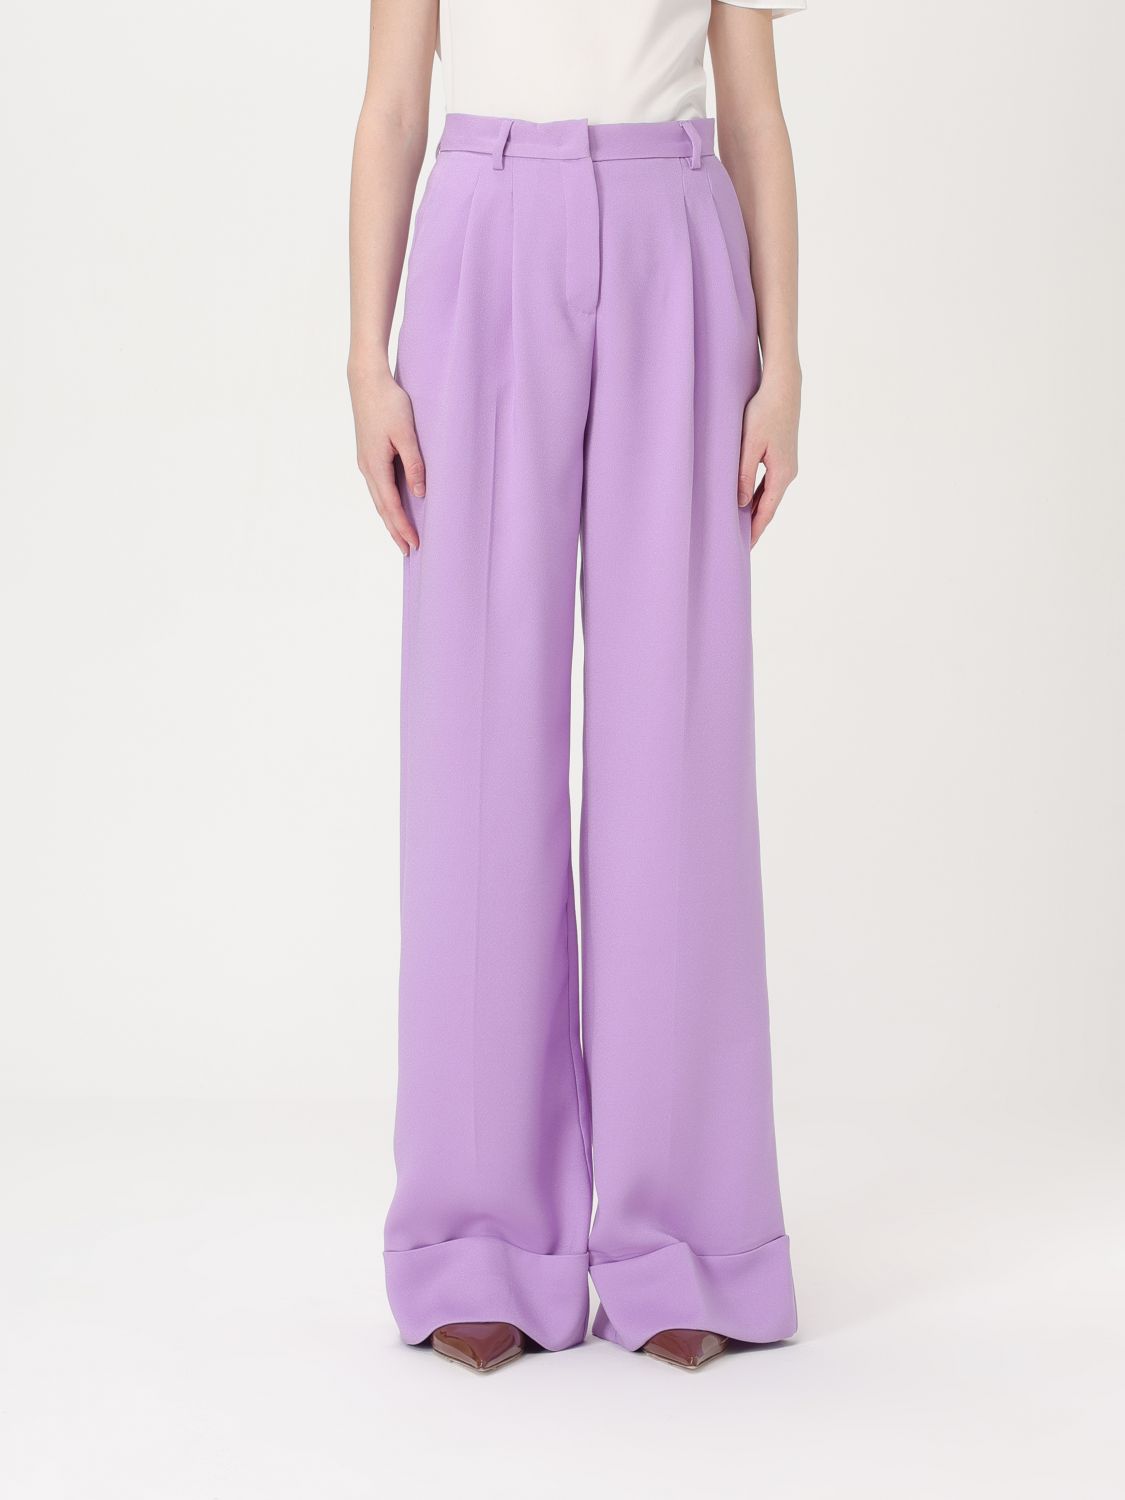 Pants ANDAMANE Woman color Violet